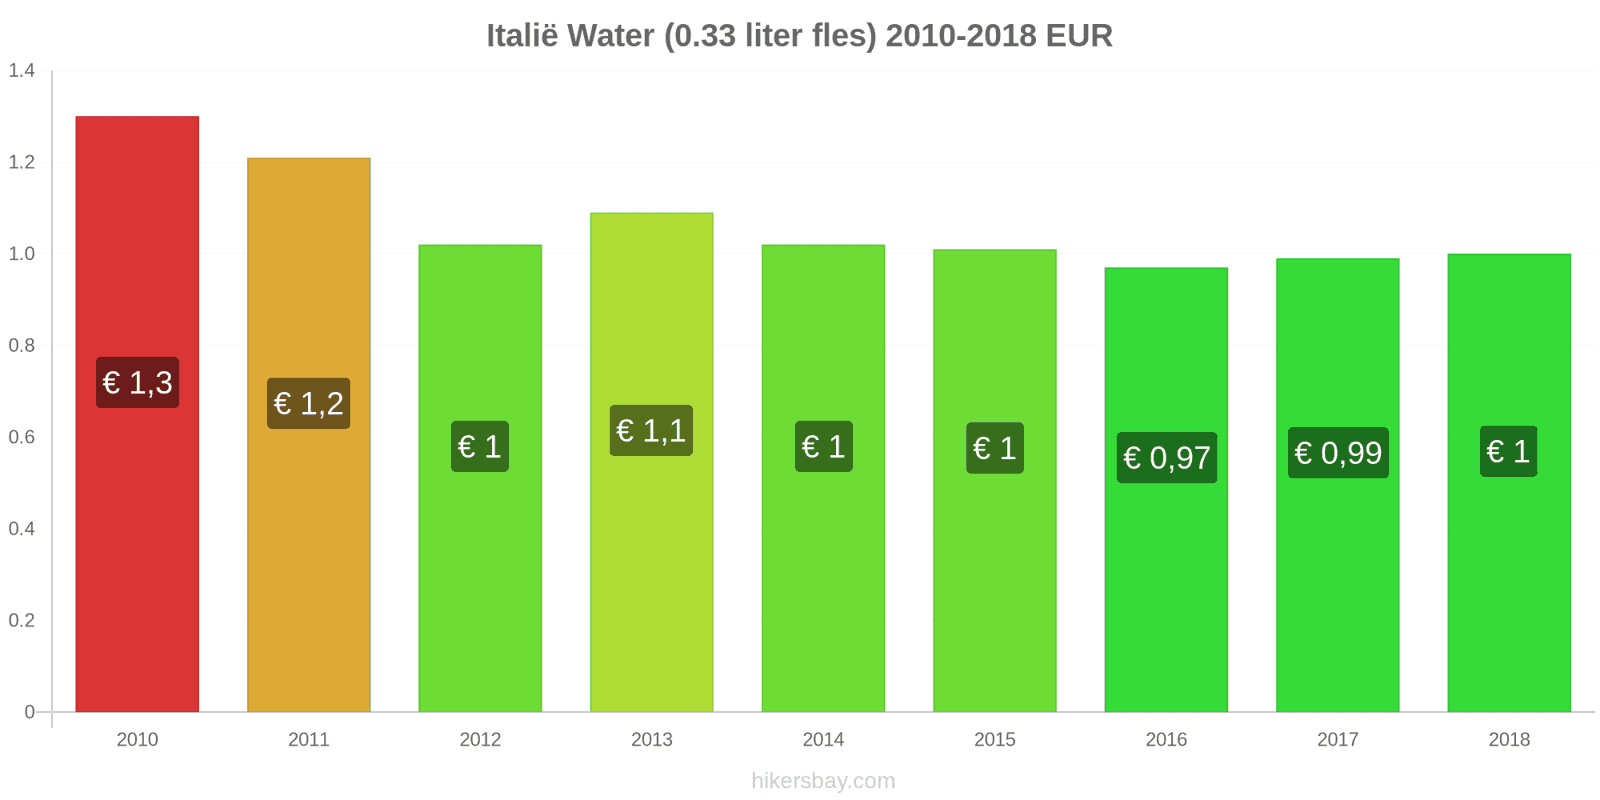 Italië prijswijzigingen Water (0.33 liter fles) hikersbay.com